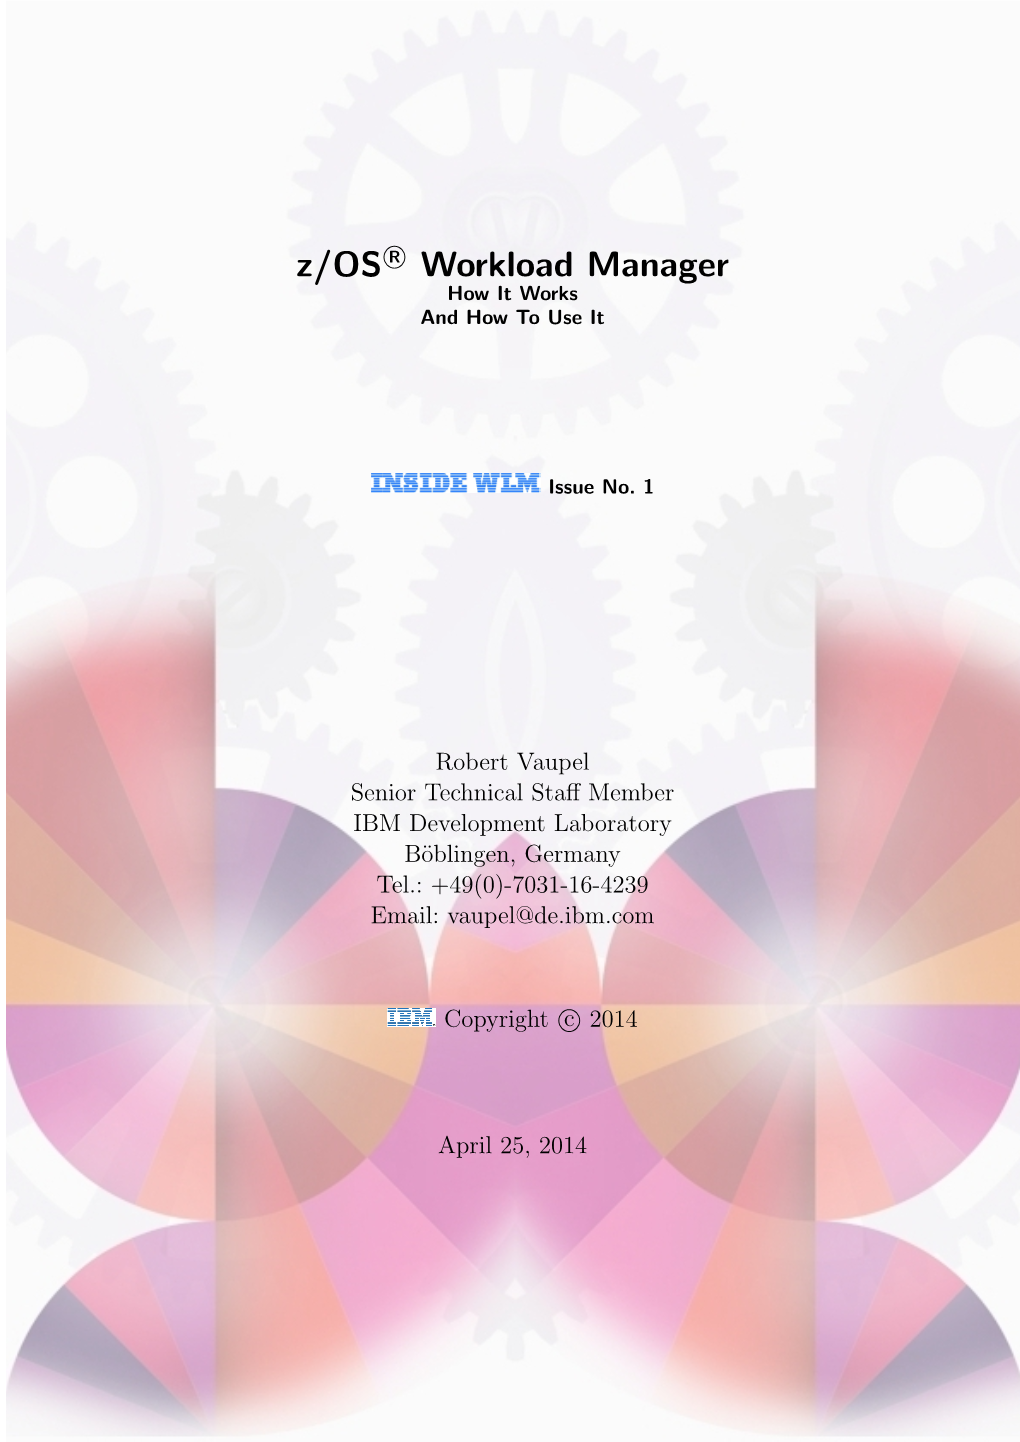 Z/OSR Workload Manager